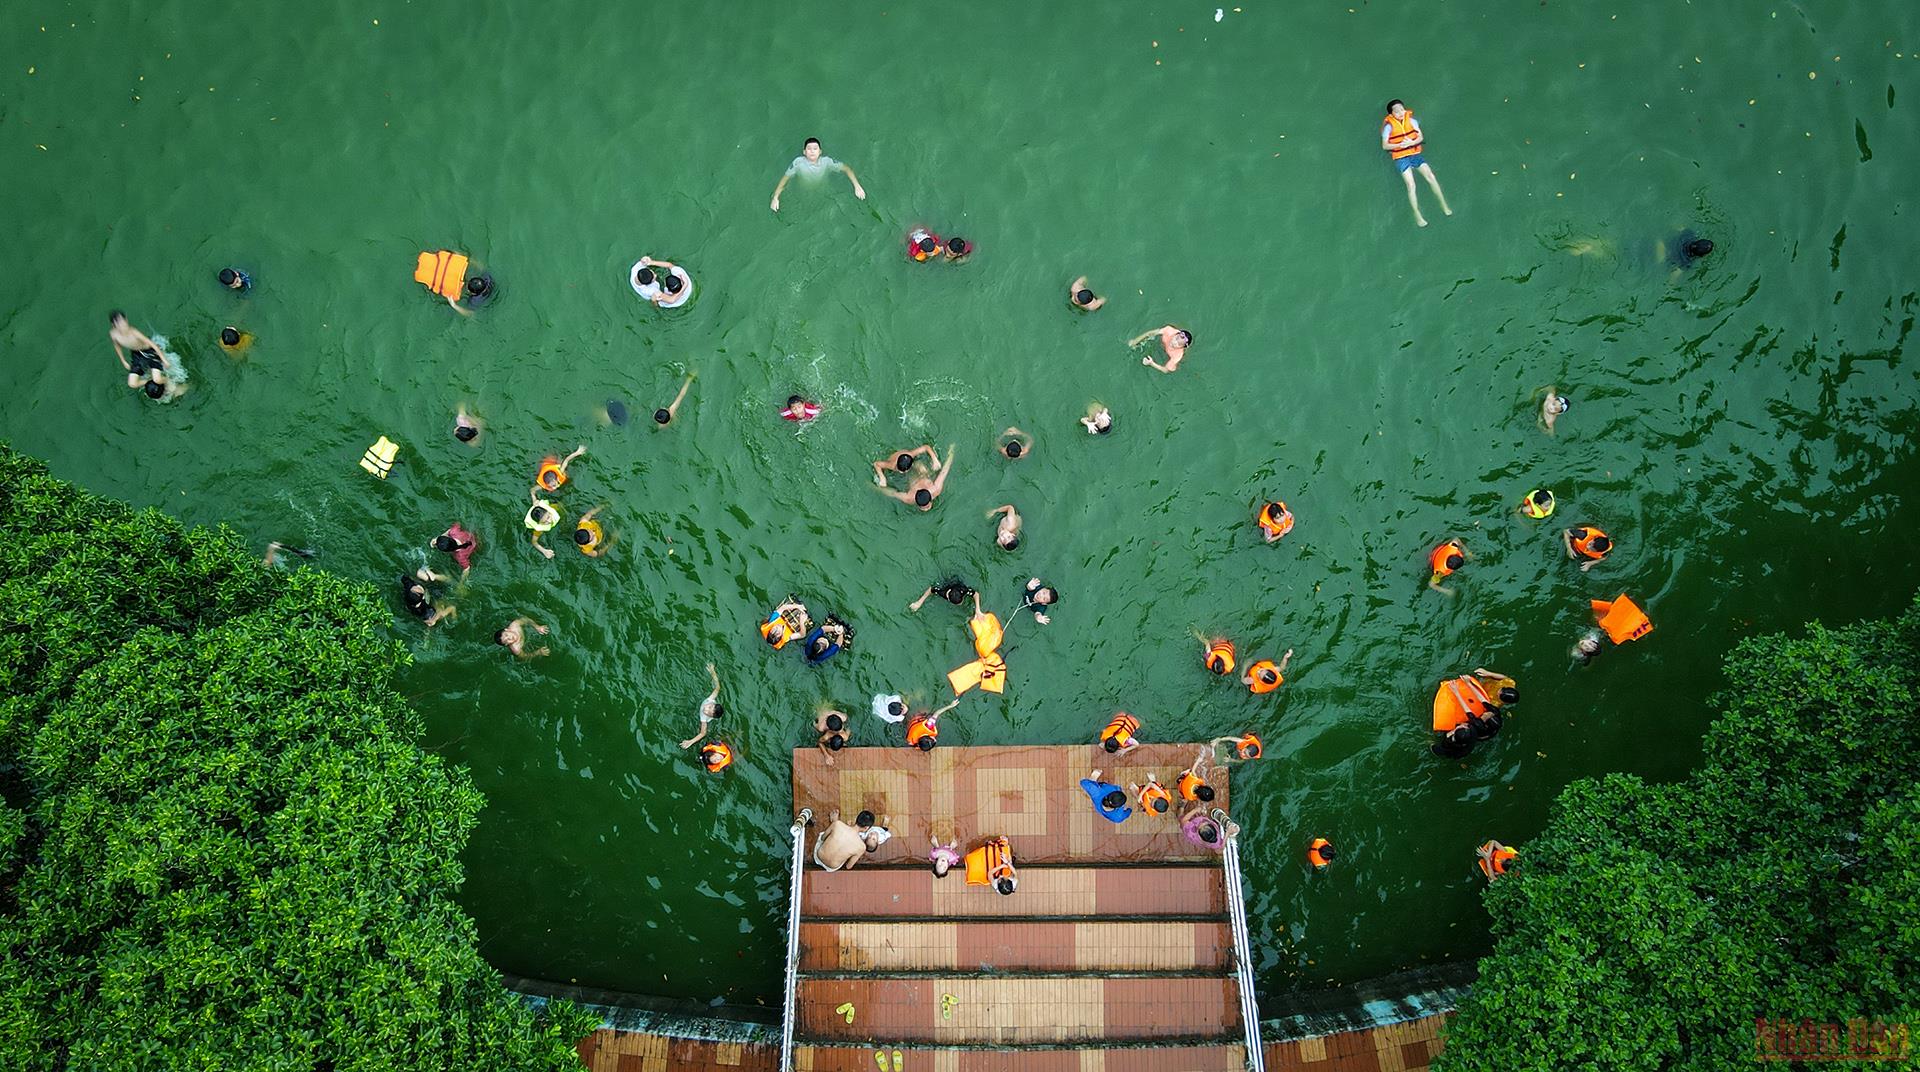 &quot;Biến&quot; ao làng thành bể bơi cực ngầu, cả làng cổ ở ngoại thành Hà Nội cùng huấn luyện các &quot;Yết Kiêu&quot; nhí - Ảnh 17.